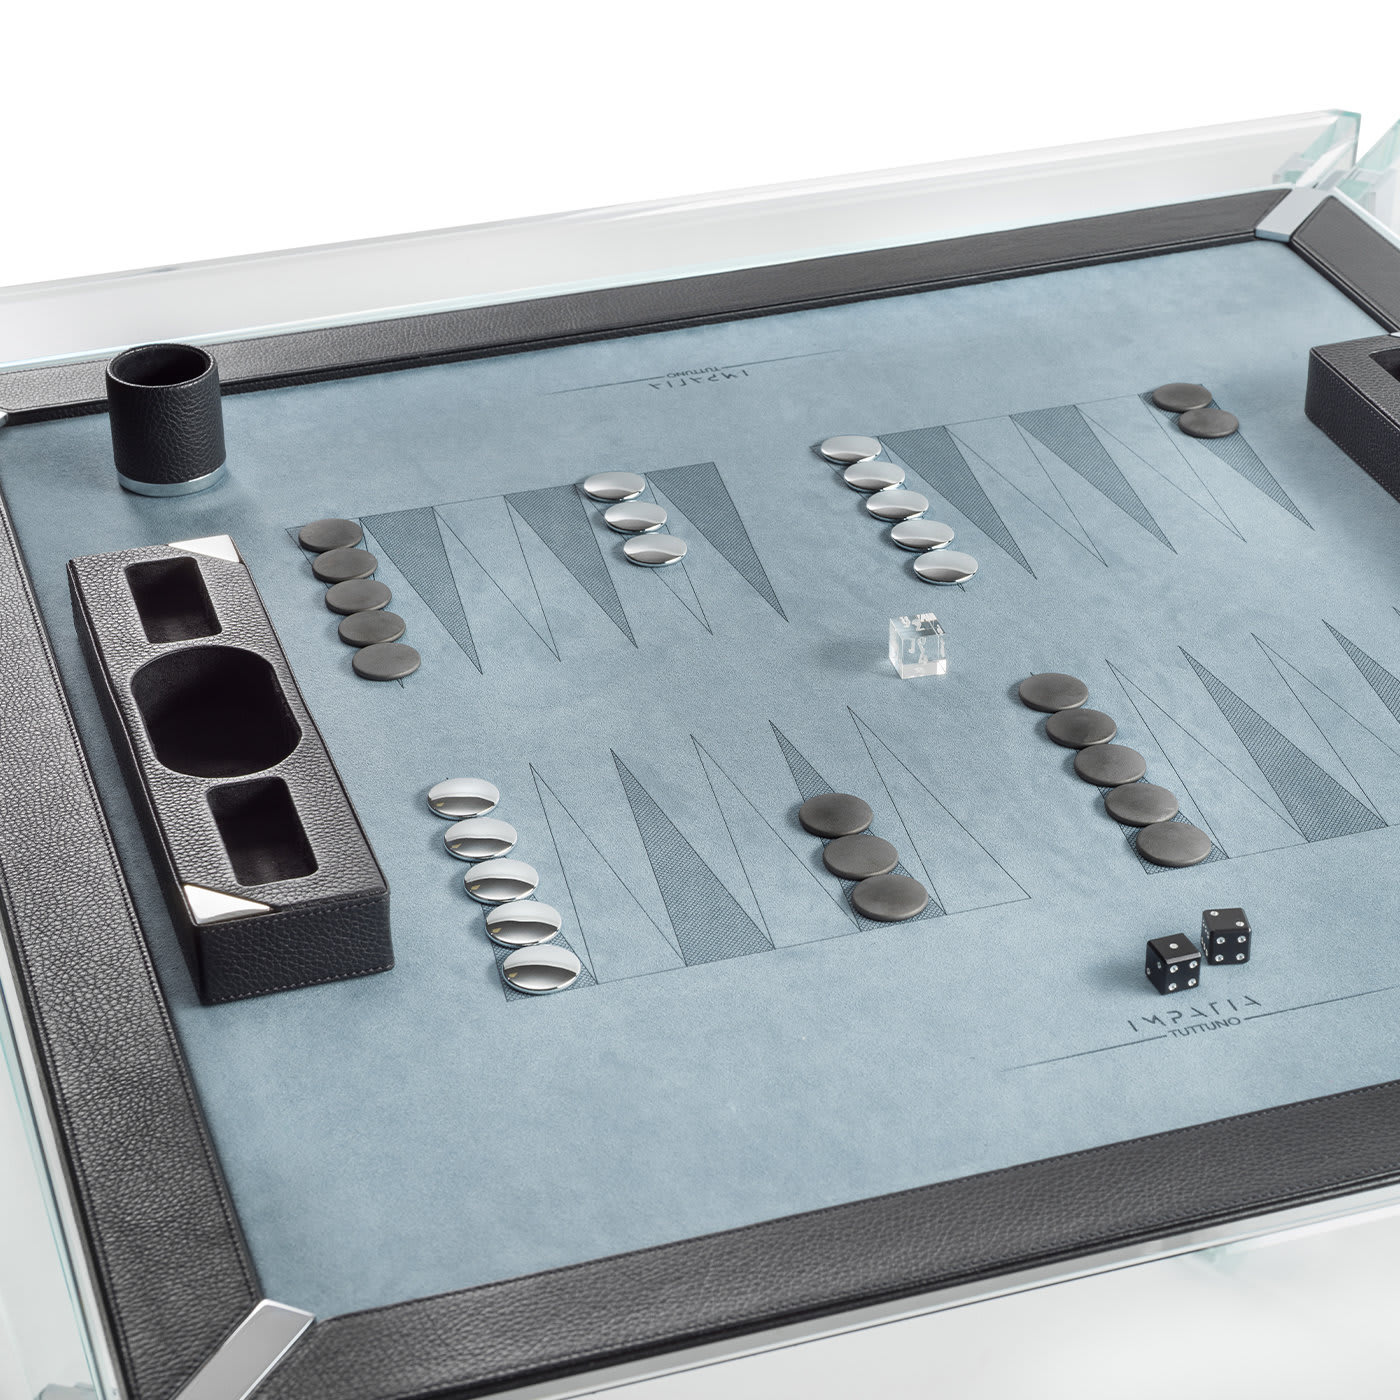 Tuttuno Leather Edition Backgammon Game Table - Impatia